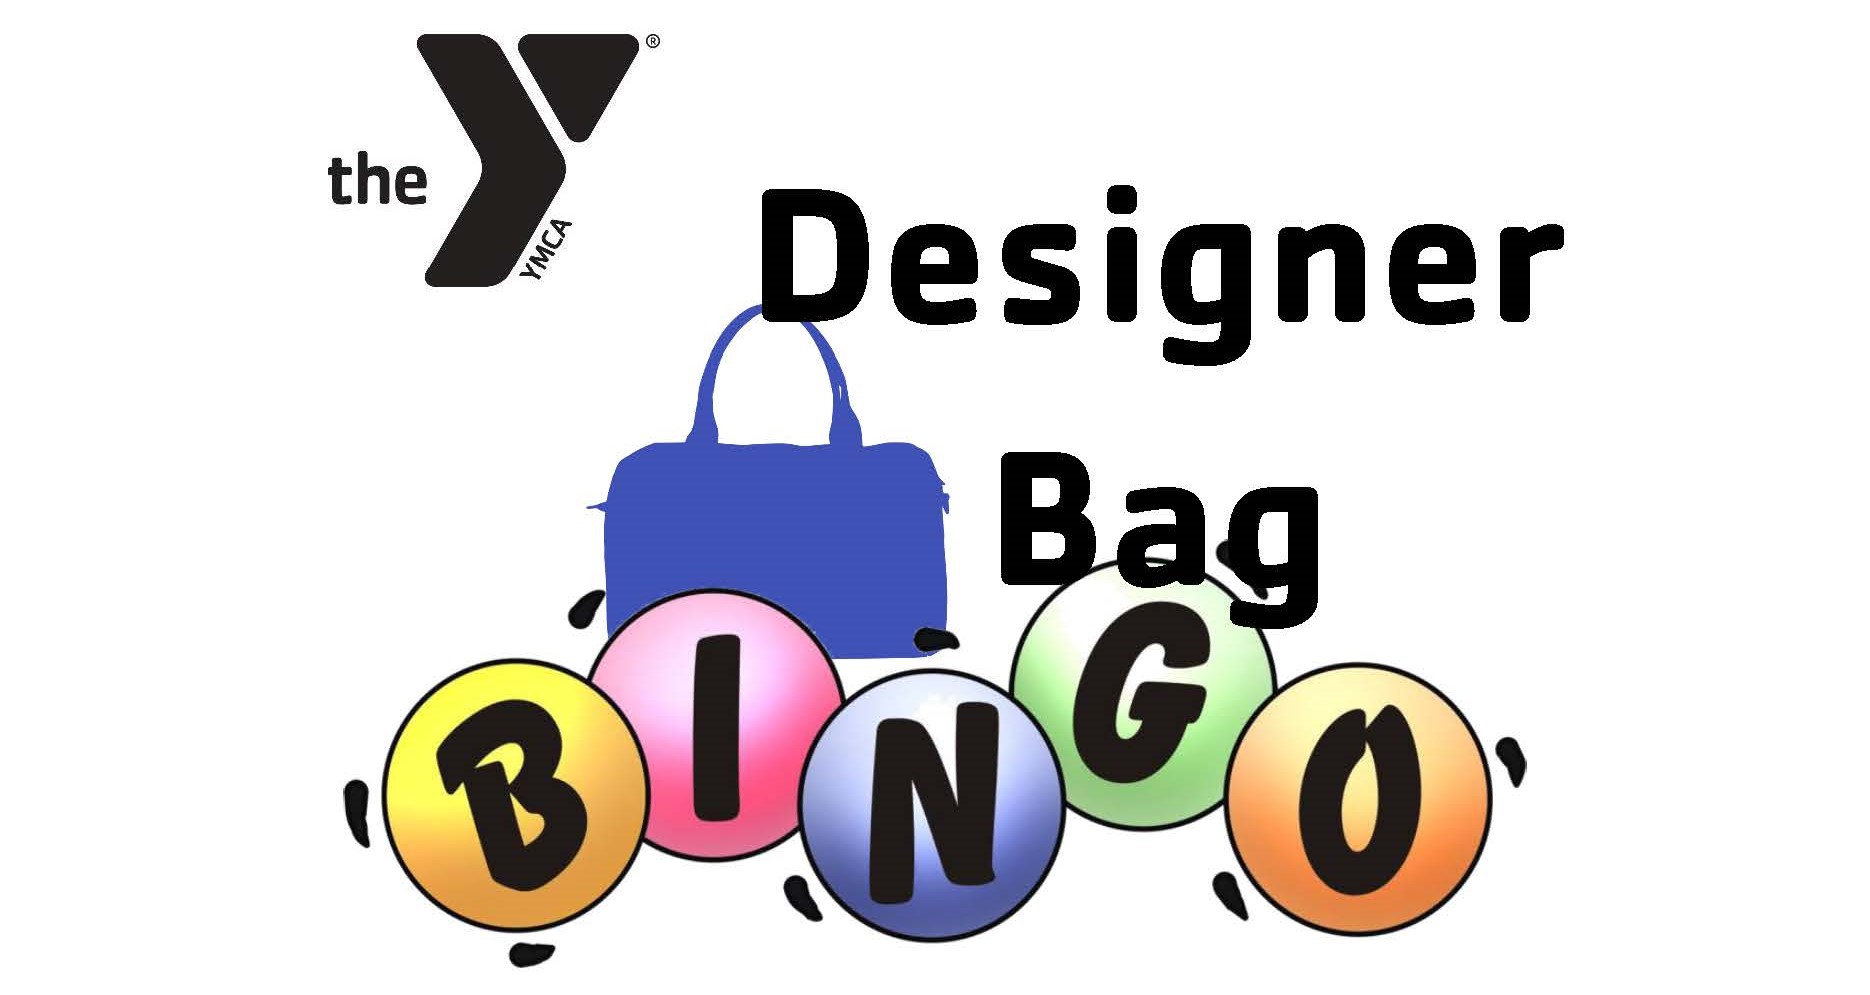 DESIGNER BAG BINGO YMCA Blog Post